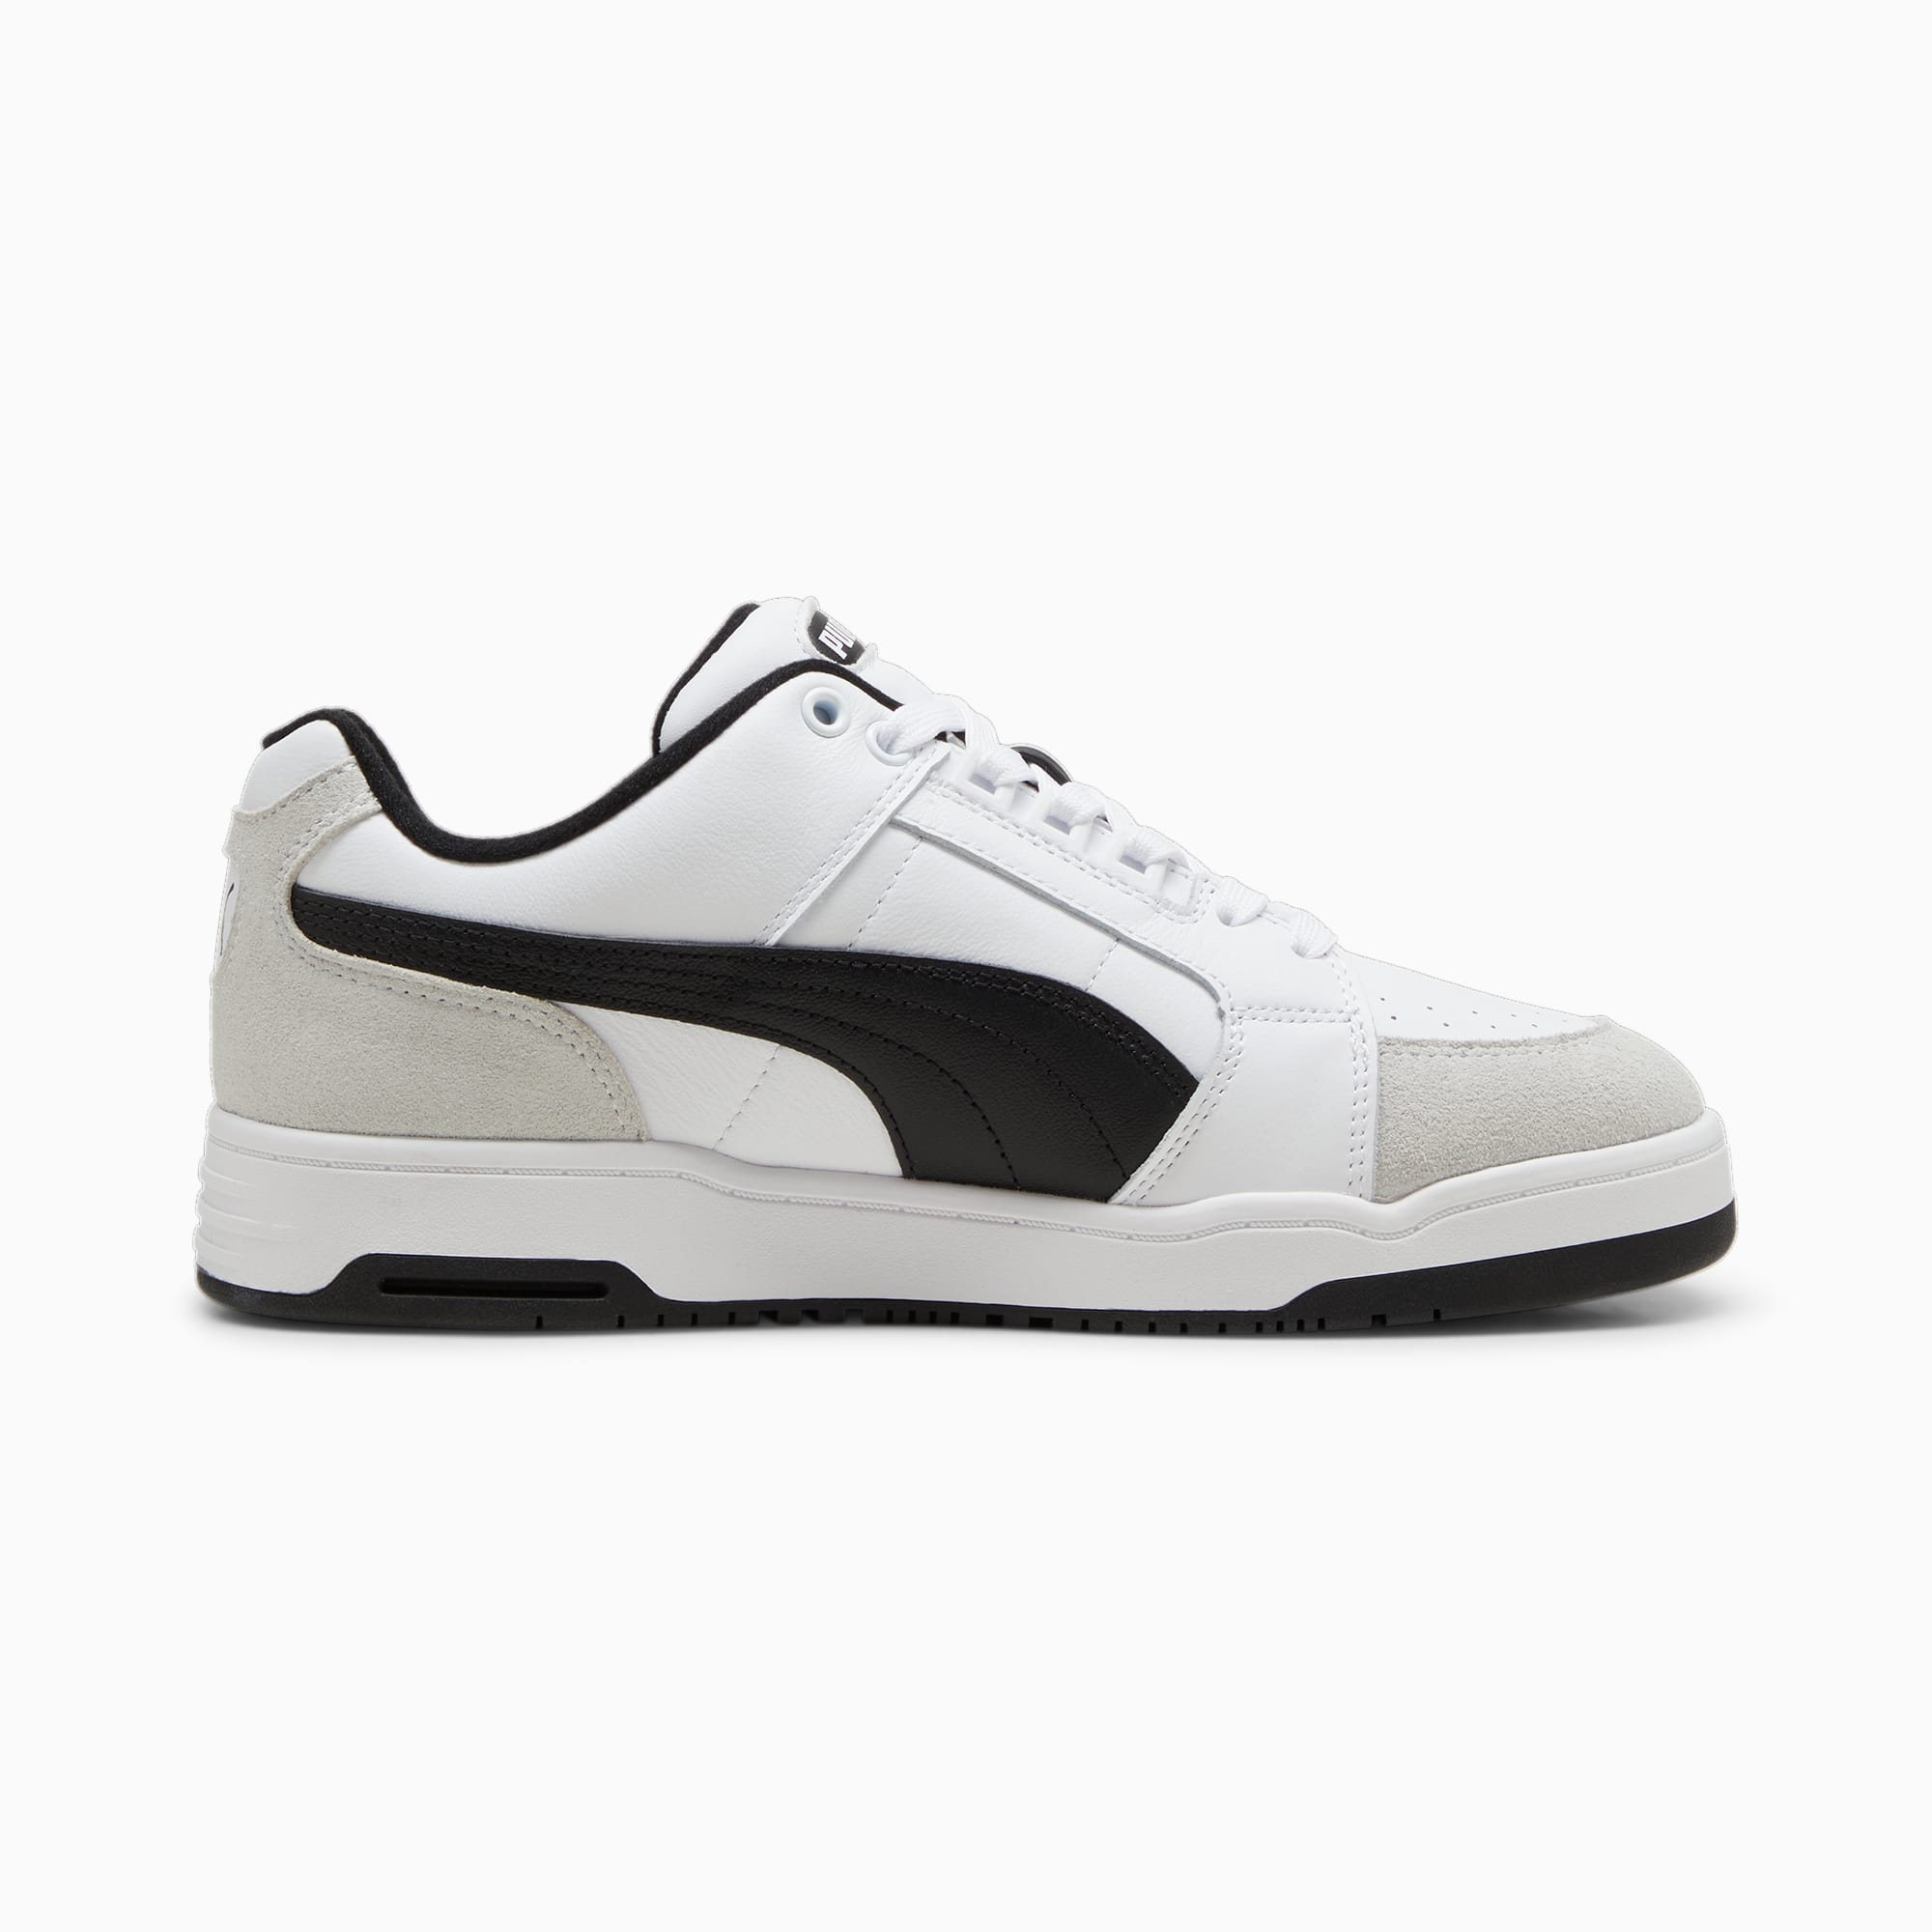 PUMA Slipstream Lo Retro-Sneakers Schuhe, Weiß/Schwarz, Größe: 46, Schuhe